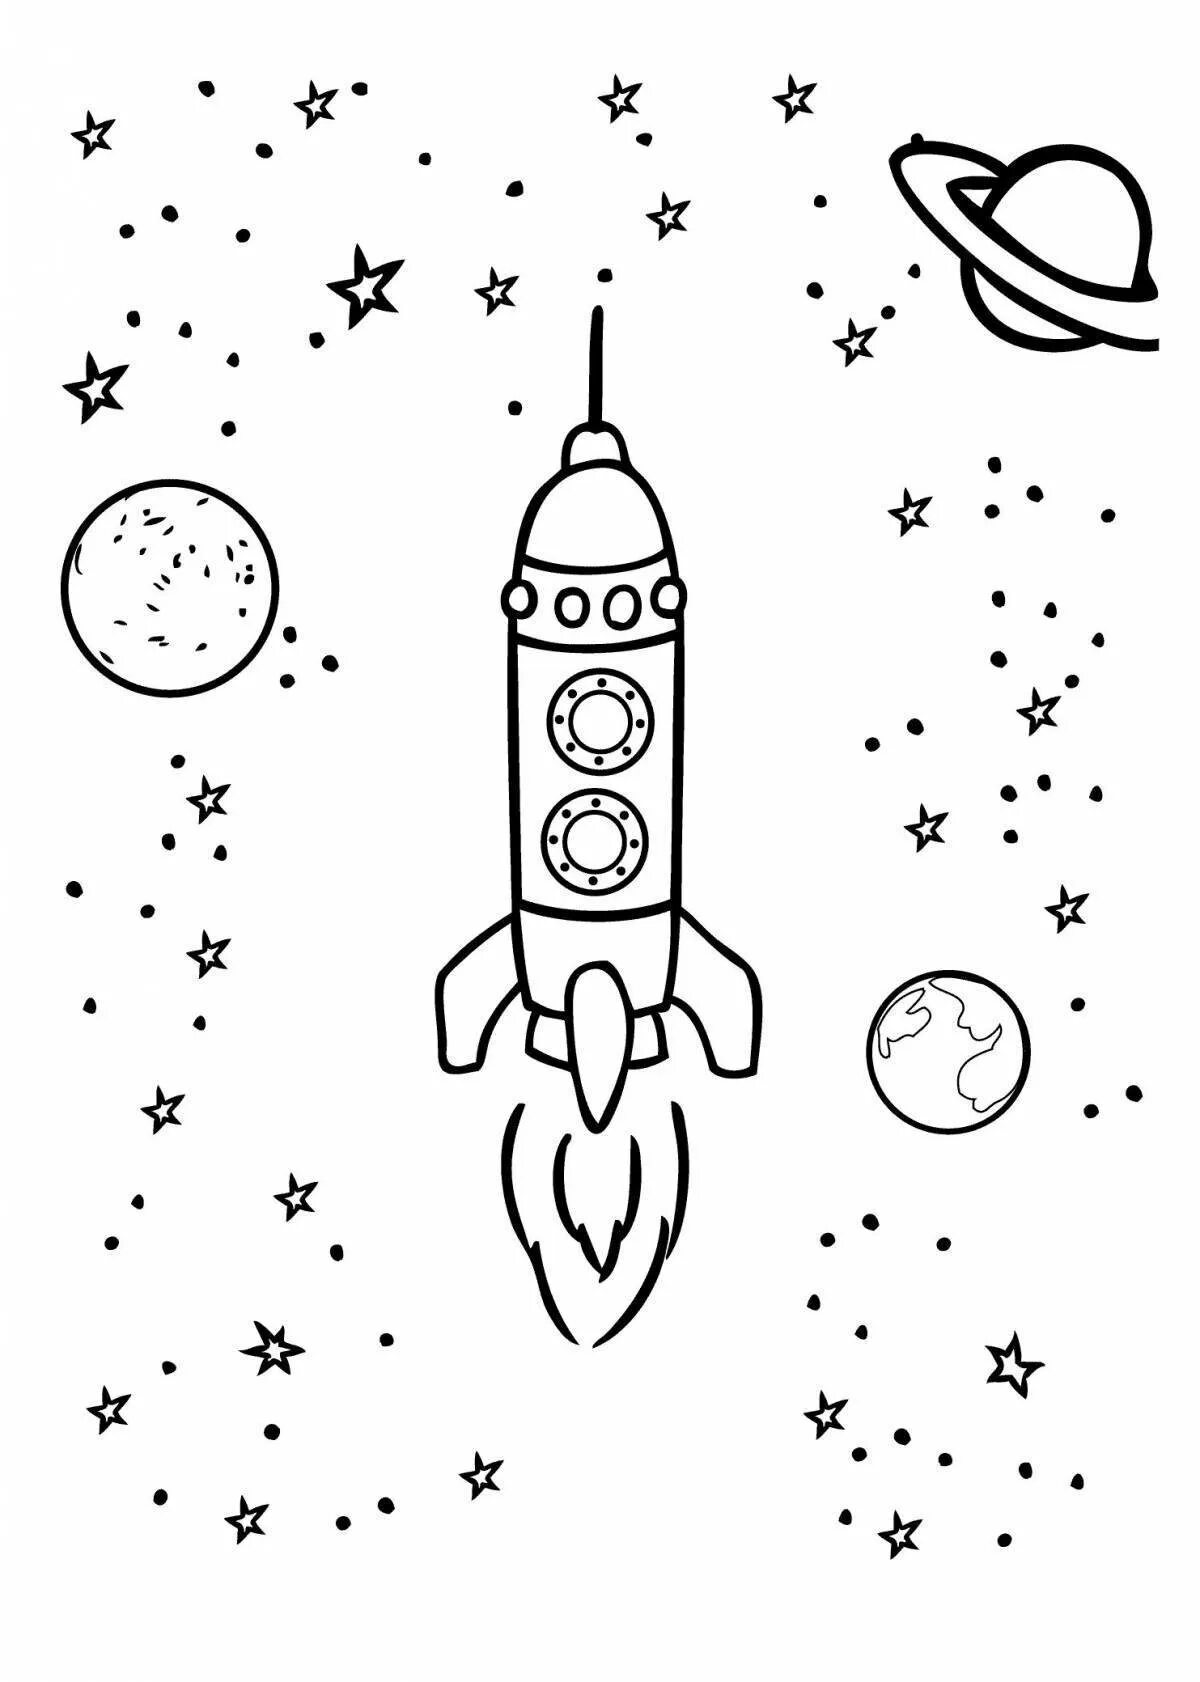 Ракета раскрасить. Ракета раскраска. Ракета раскраска для детей. Космос раскраска для детей. Раскраска ракета в космосе.